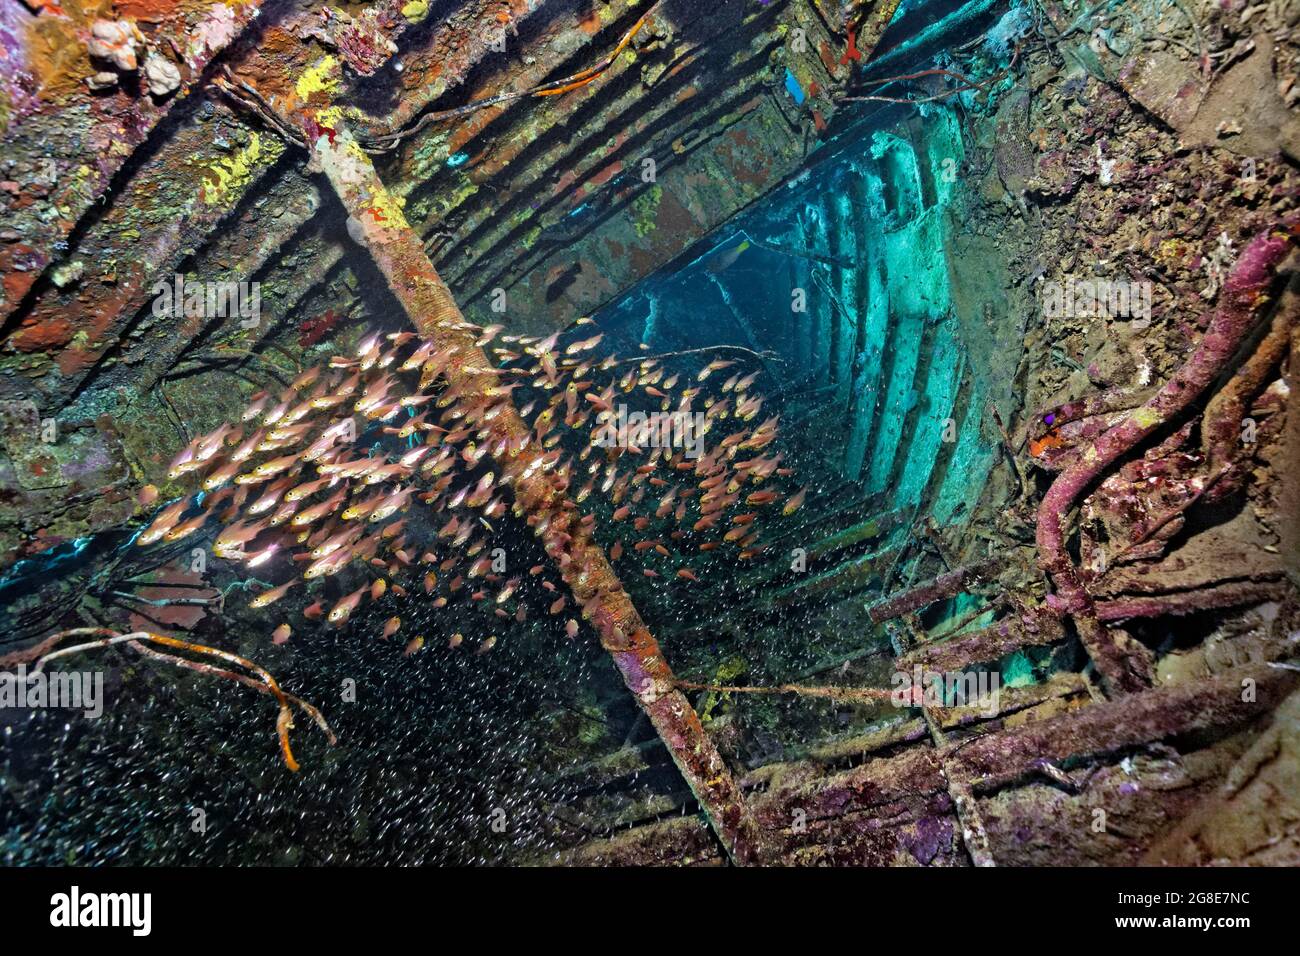 Schwarm goldener Schweinekehrmaschine (Parapriacanthus ransonneti), die in einem Schiffswrack schwimmt, das mit Sponge (Porifera), Segelschiff, rotem Meer, Abu bedeckt ist Stockfoto